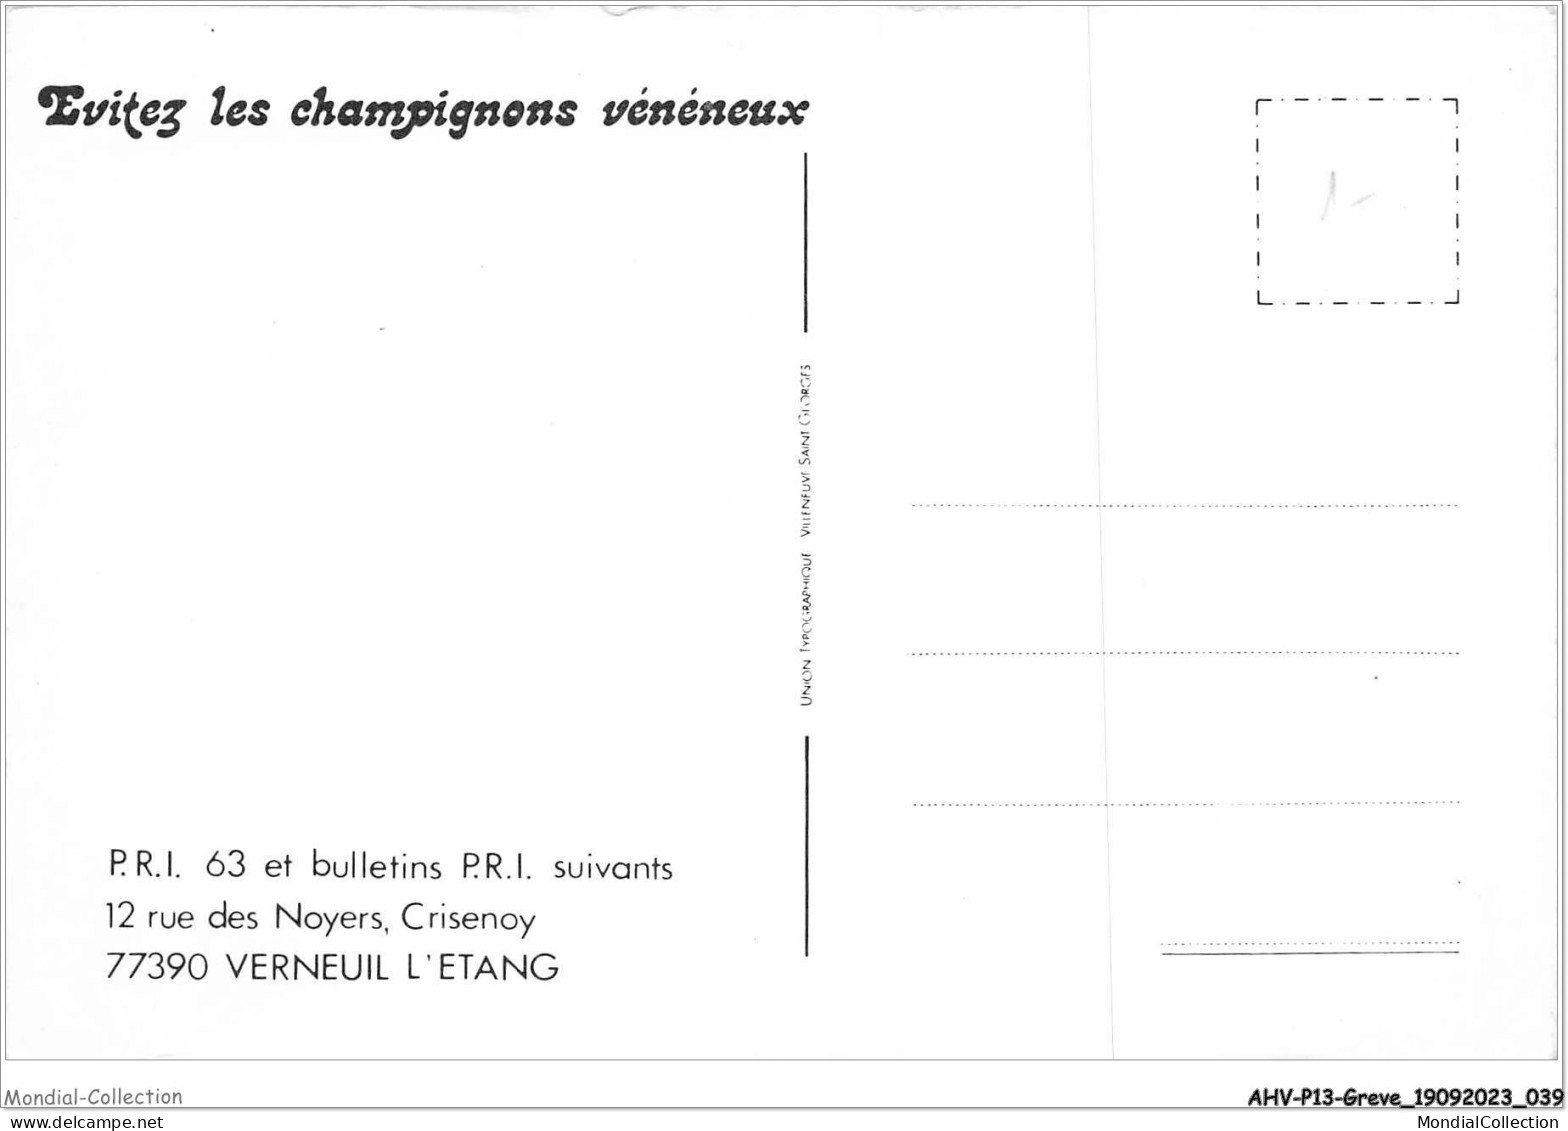 AHVP13-1133 - GREVE - Evitez Les Champignons Vénéneux  - Staking